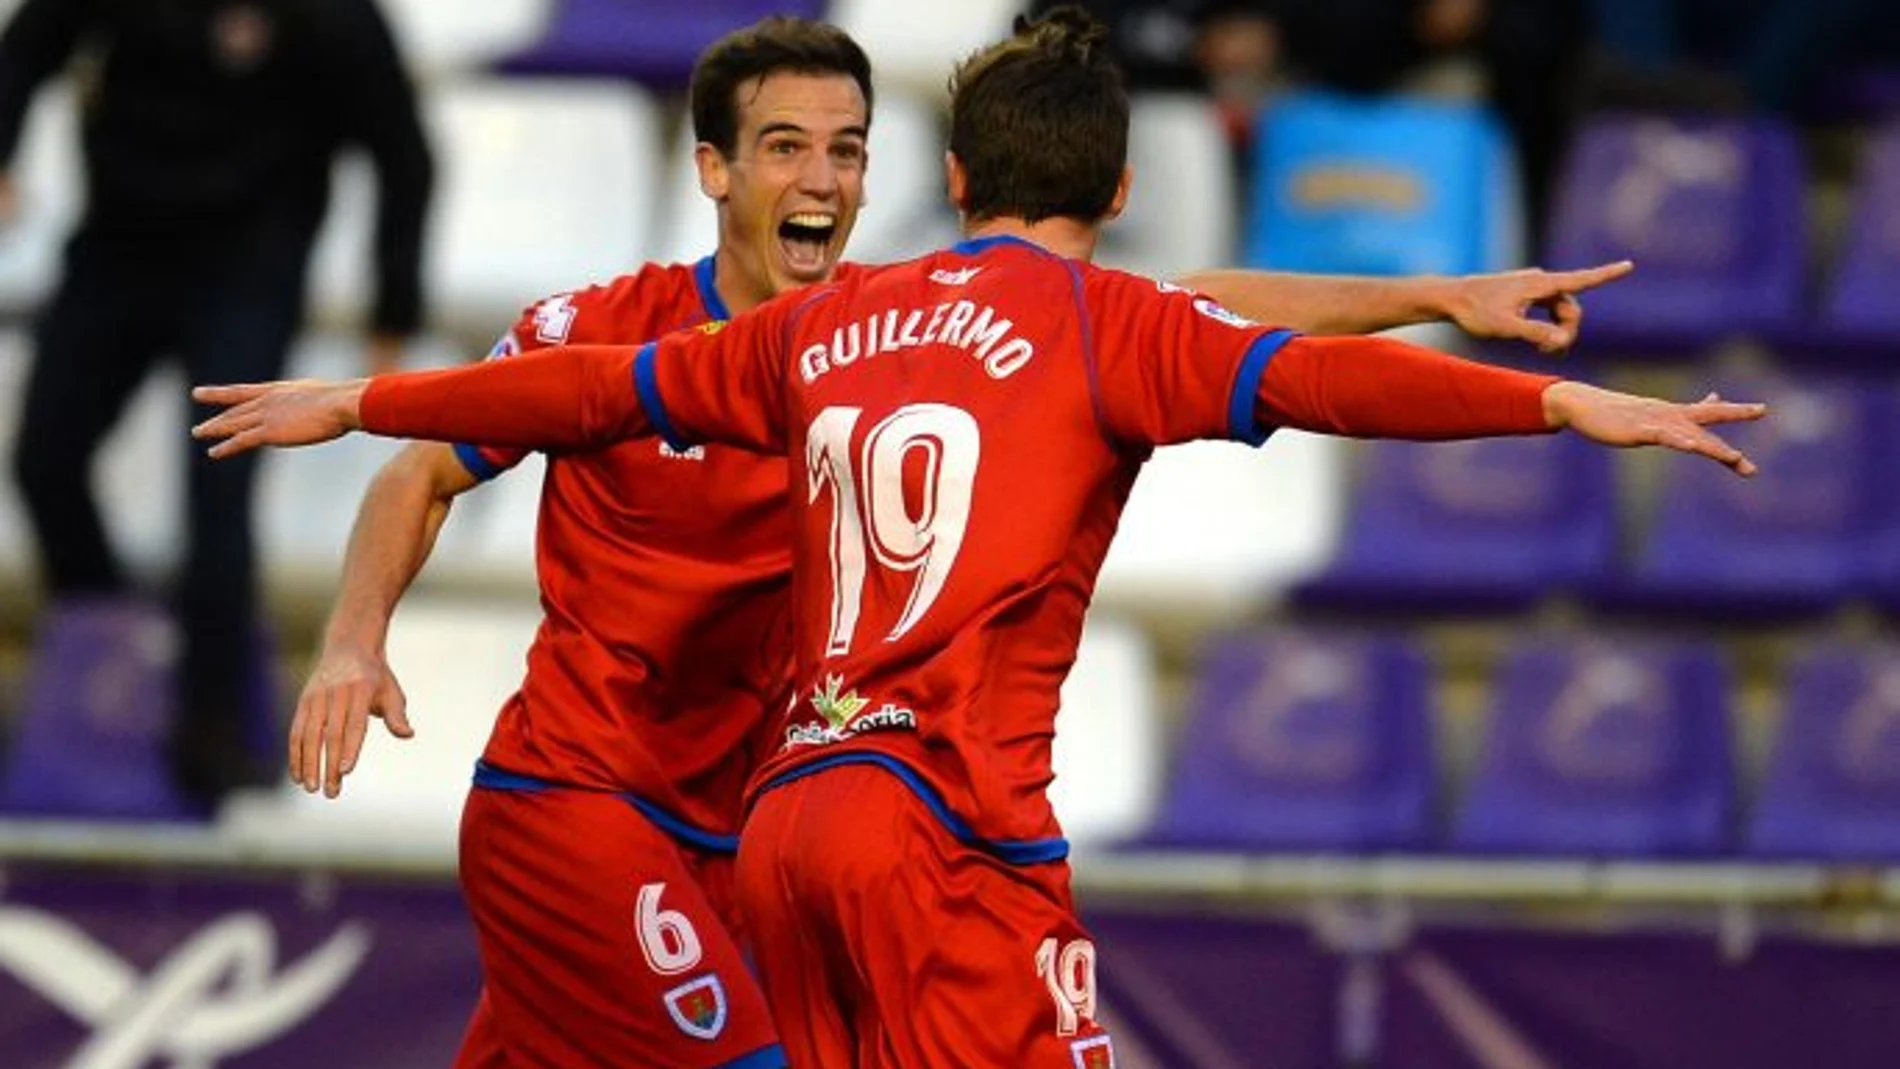 Guillermo celebra el gol de la victoria para el Numancia